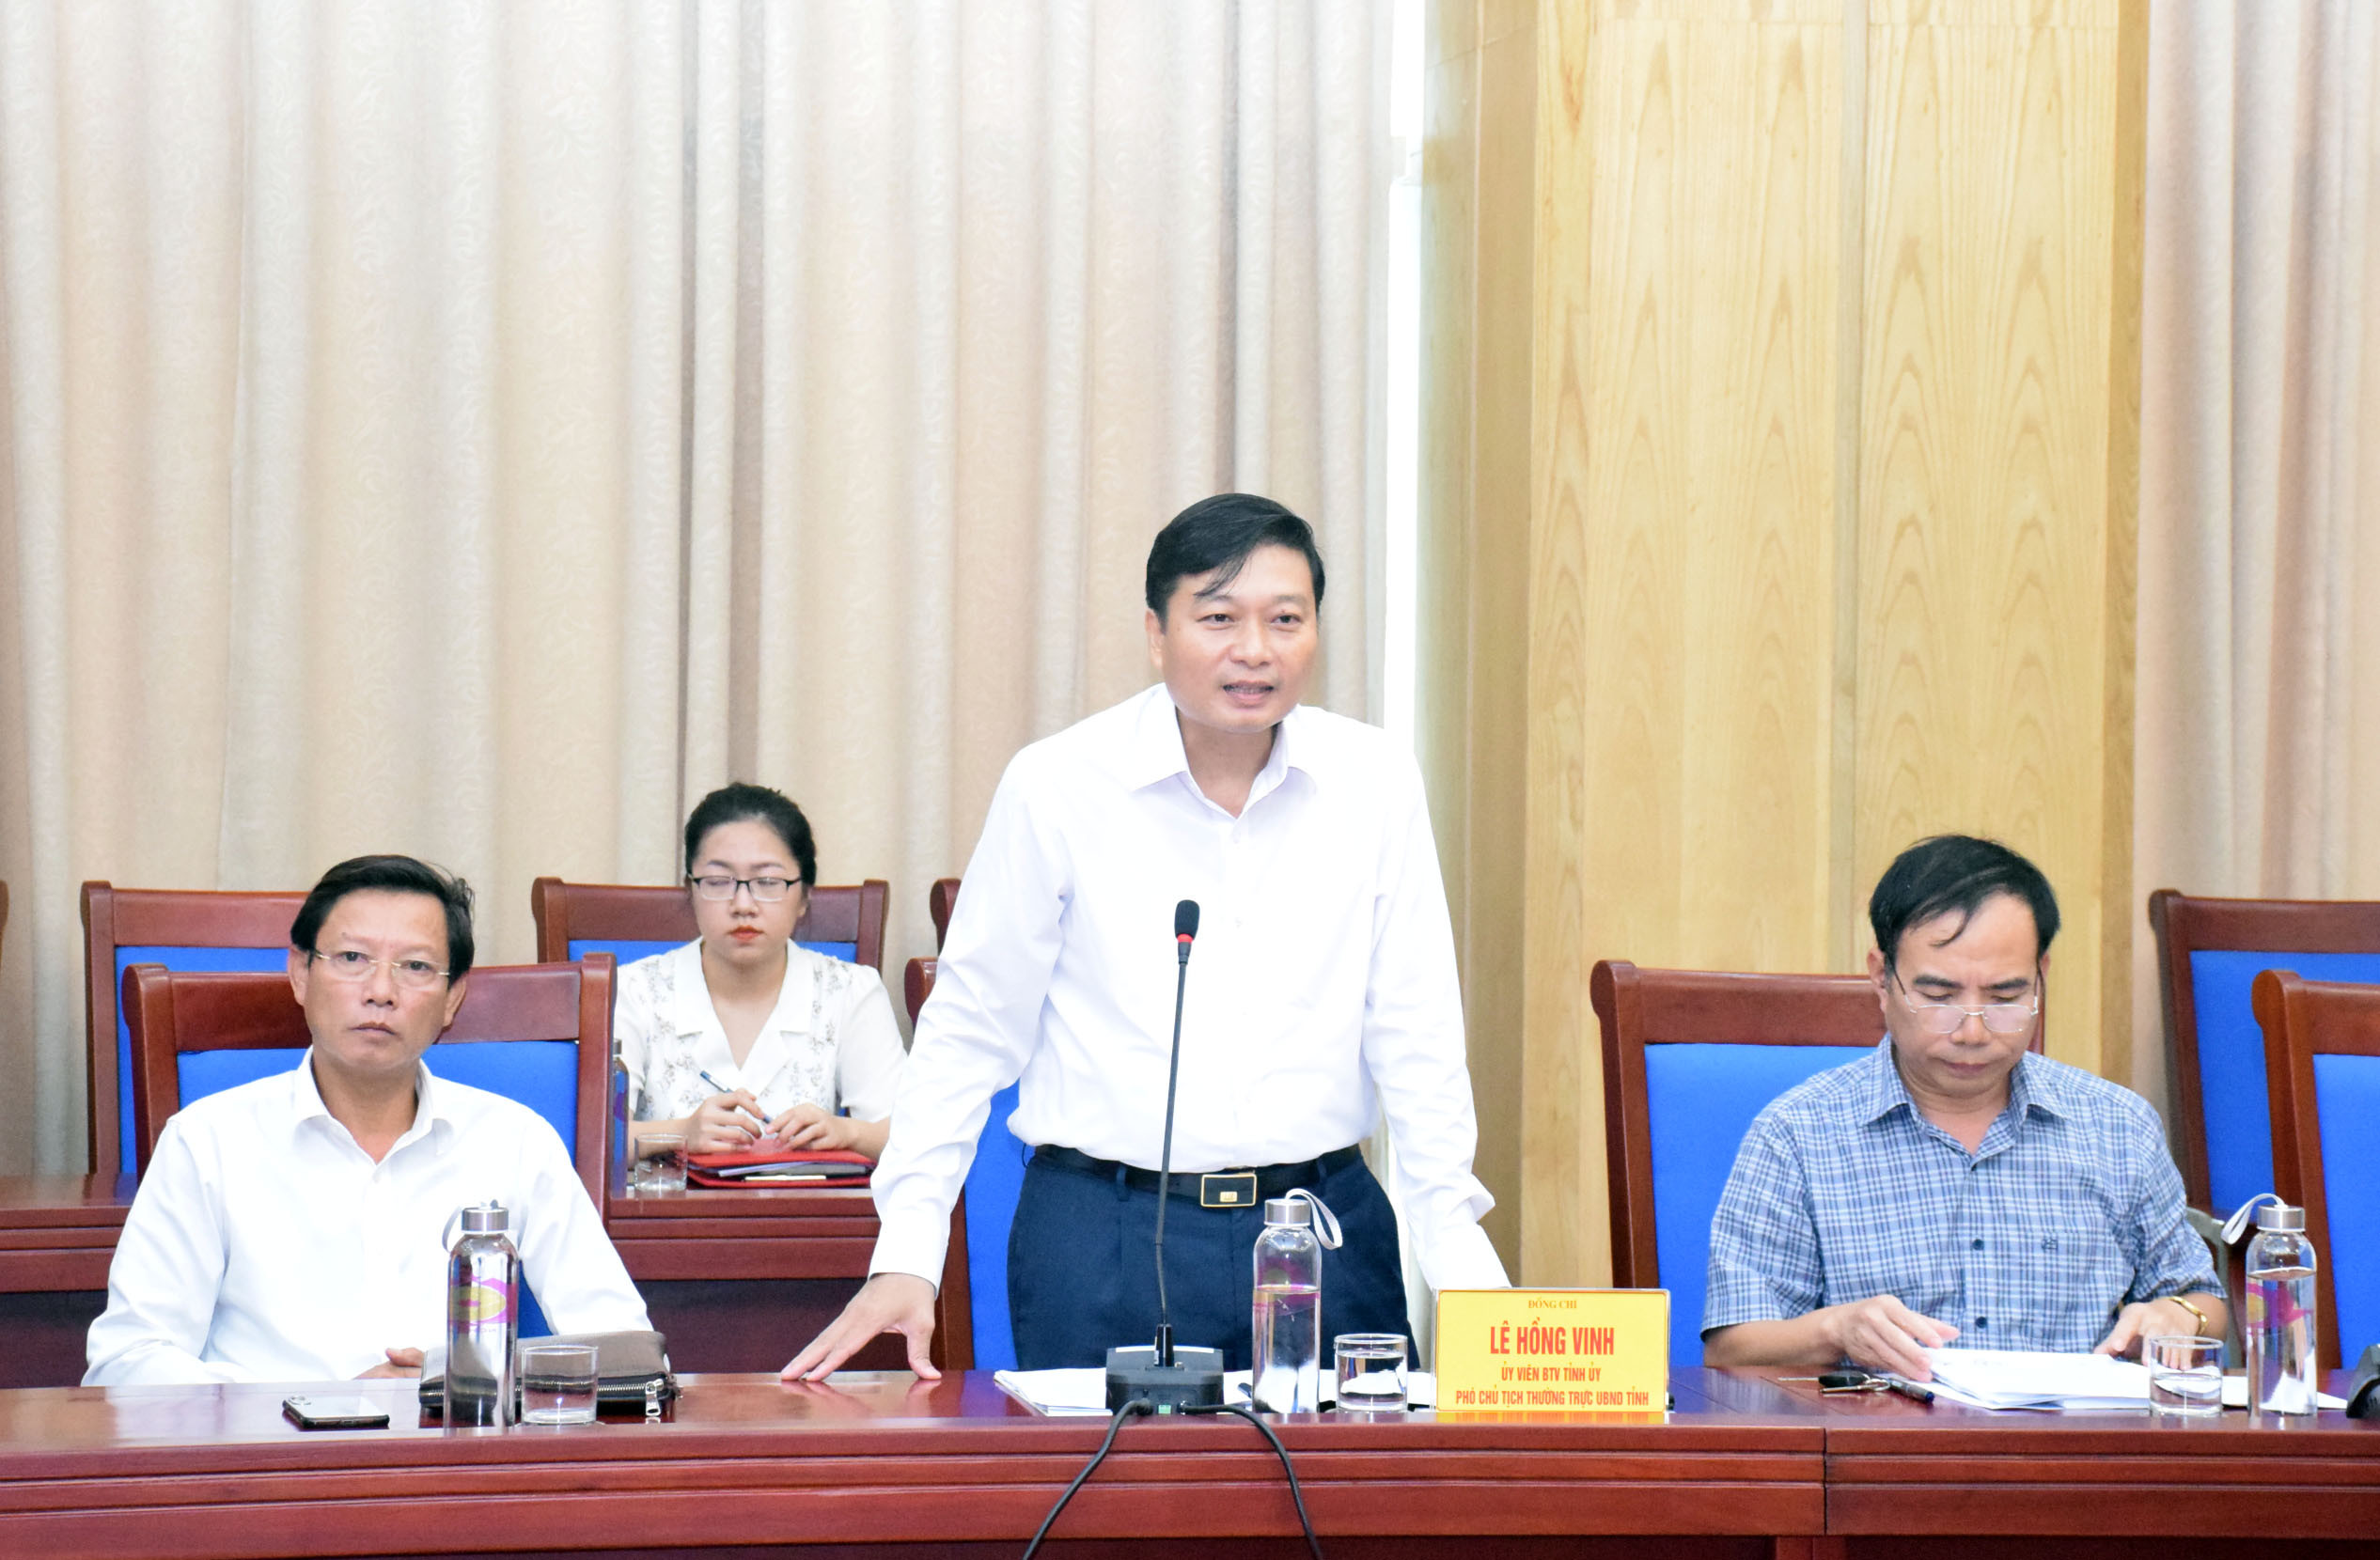 Đồng chí Lê Hồng vinh - Phó Chủ tịch UBND tỉnh Nghệ An phát biểu tại buổi làm việc. Ảnh: Xuân Hoàng